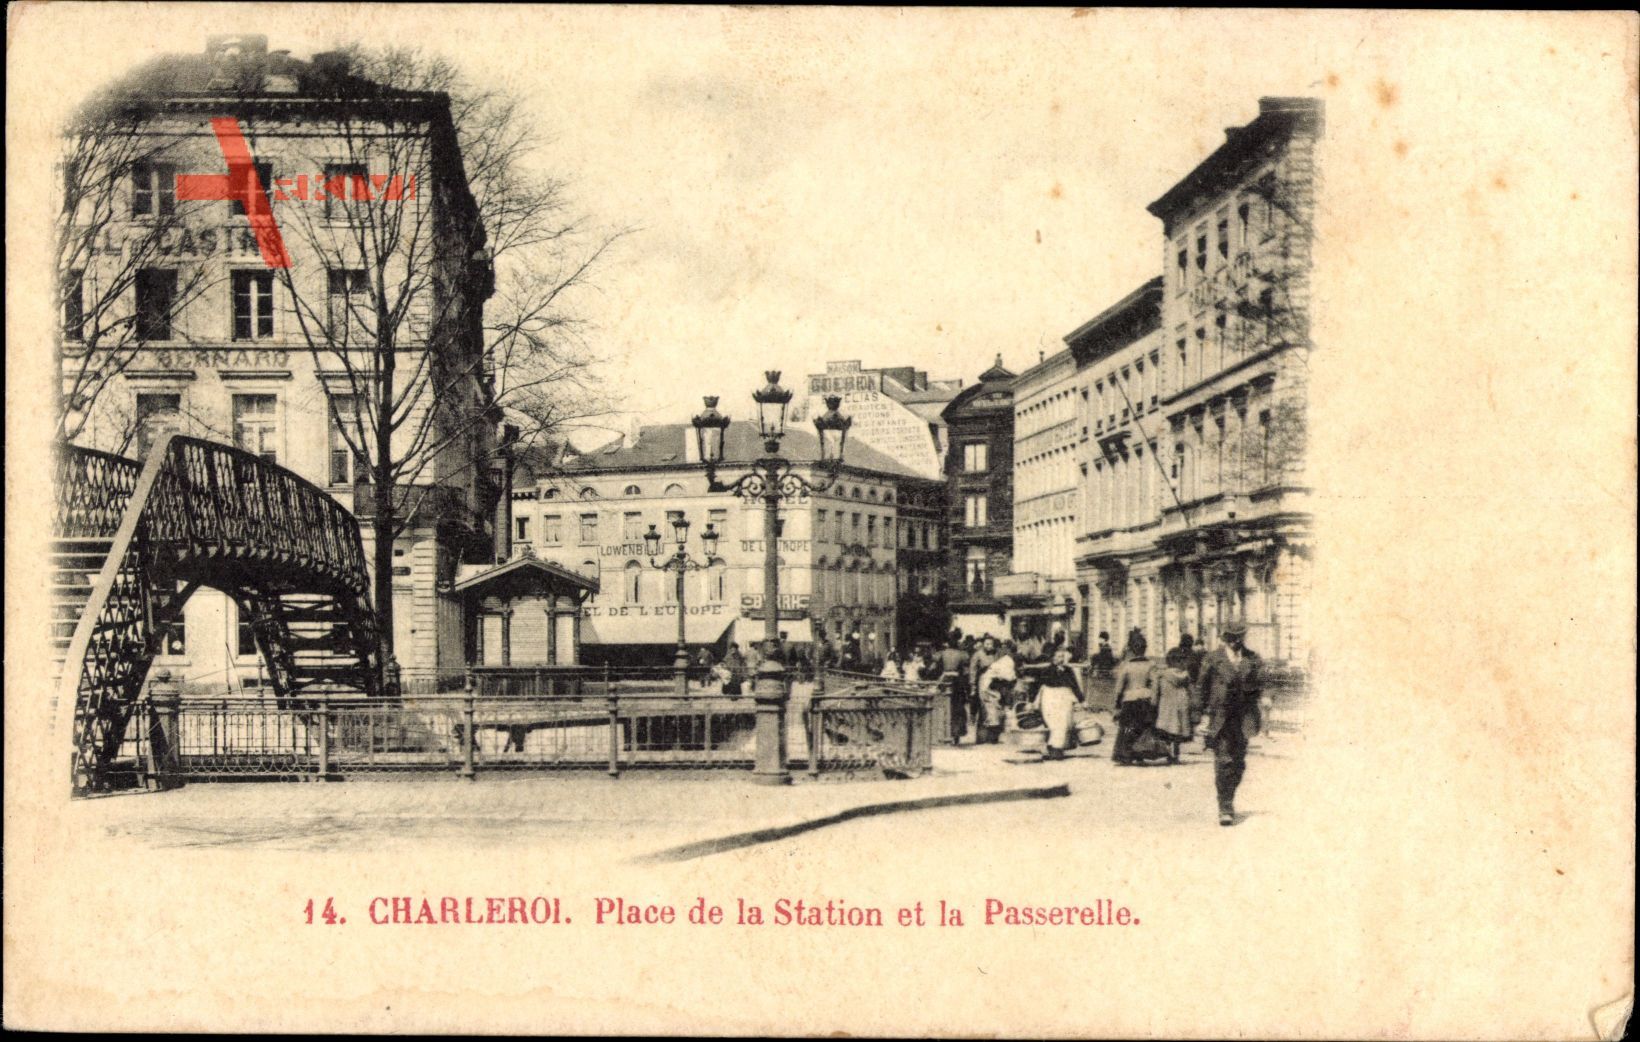 Charleroi Wallonien Hennegau Belgien, Place de la Station et la Passerelle